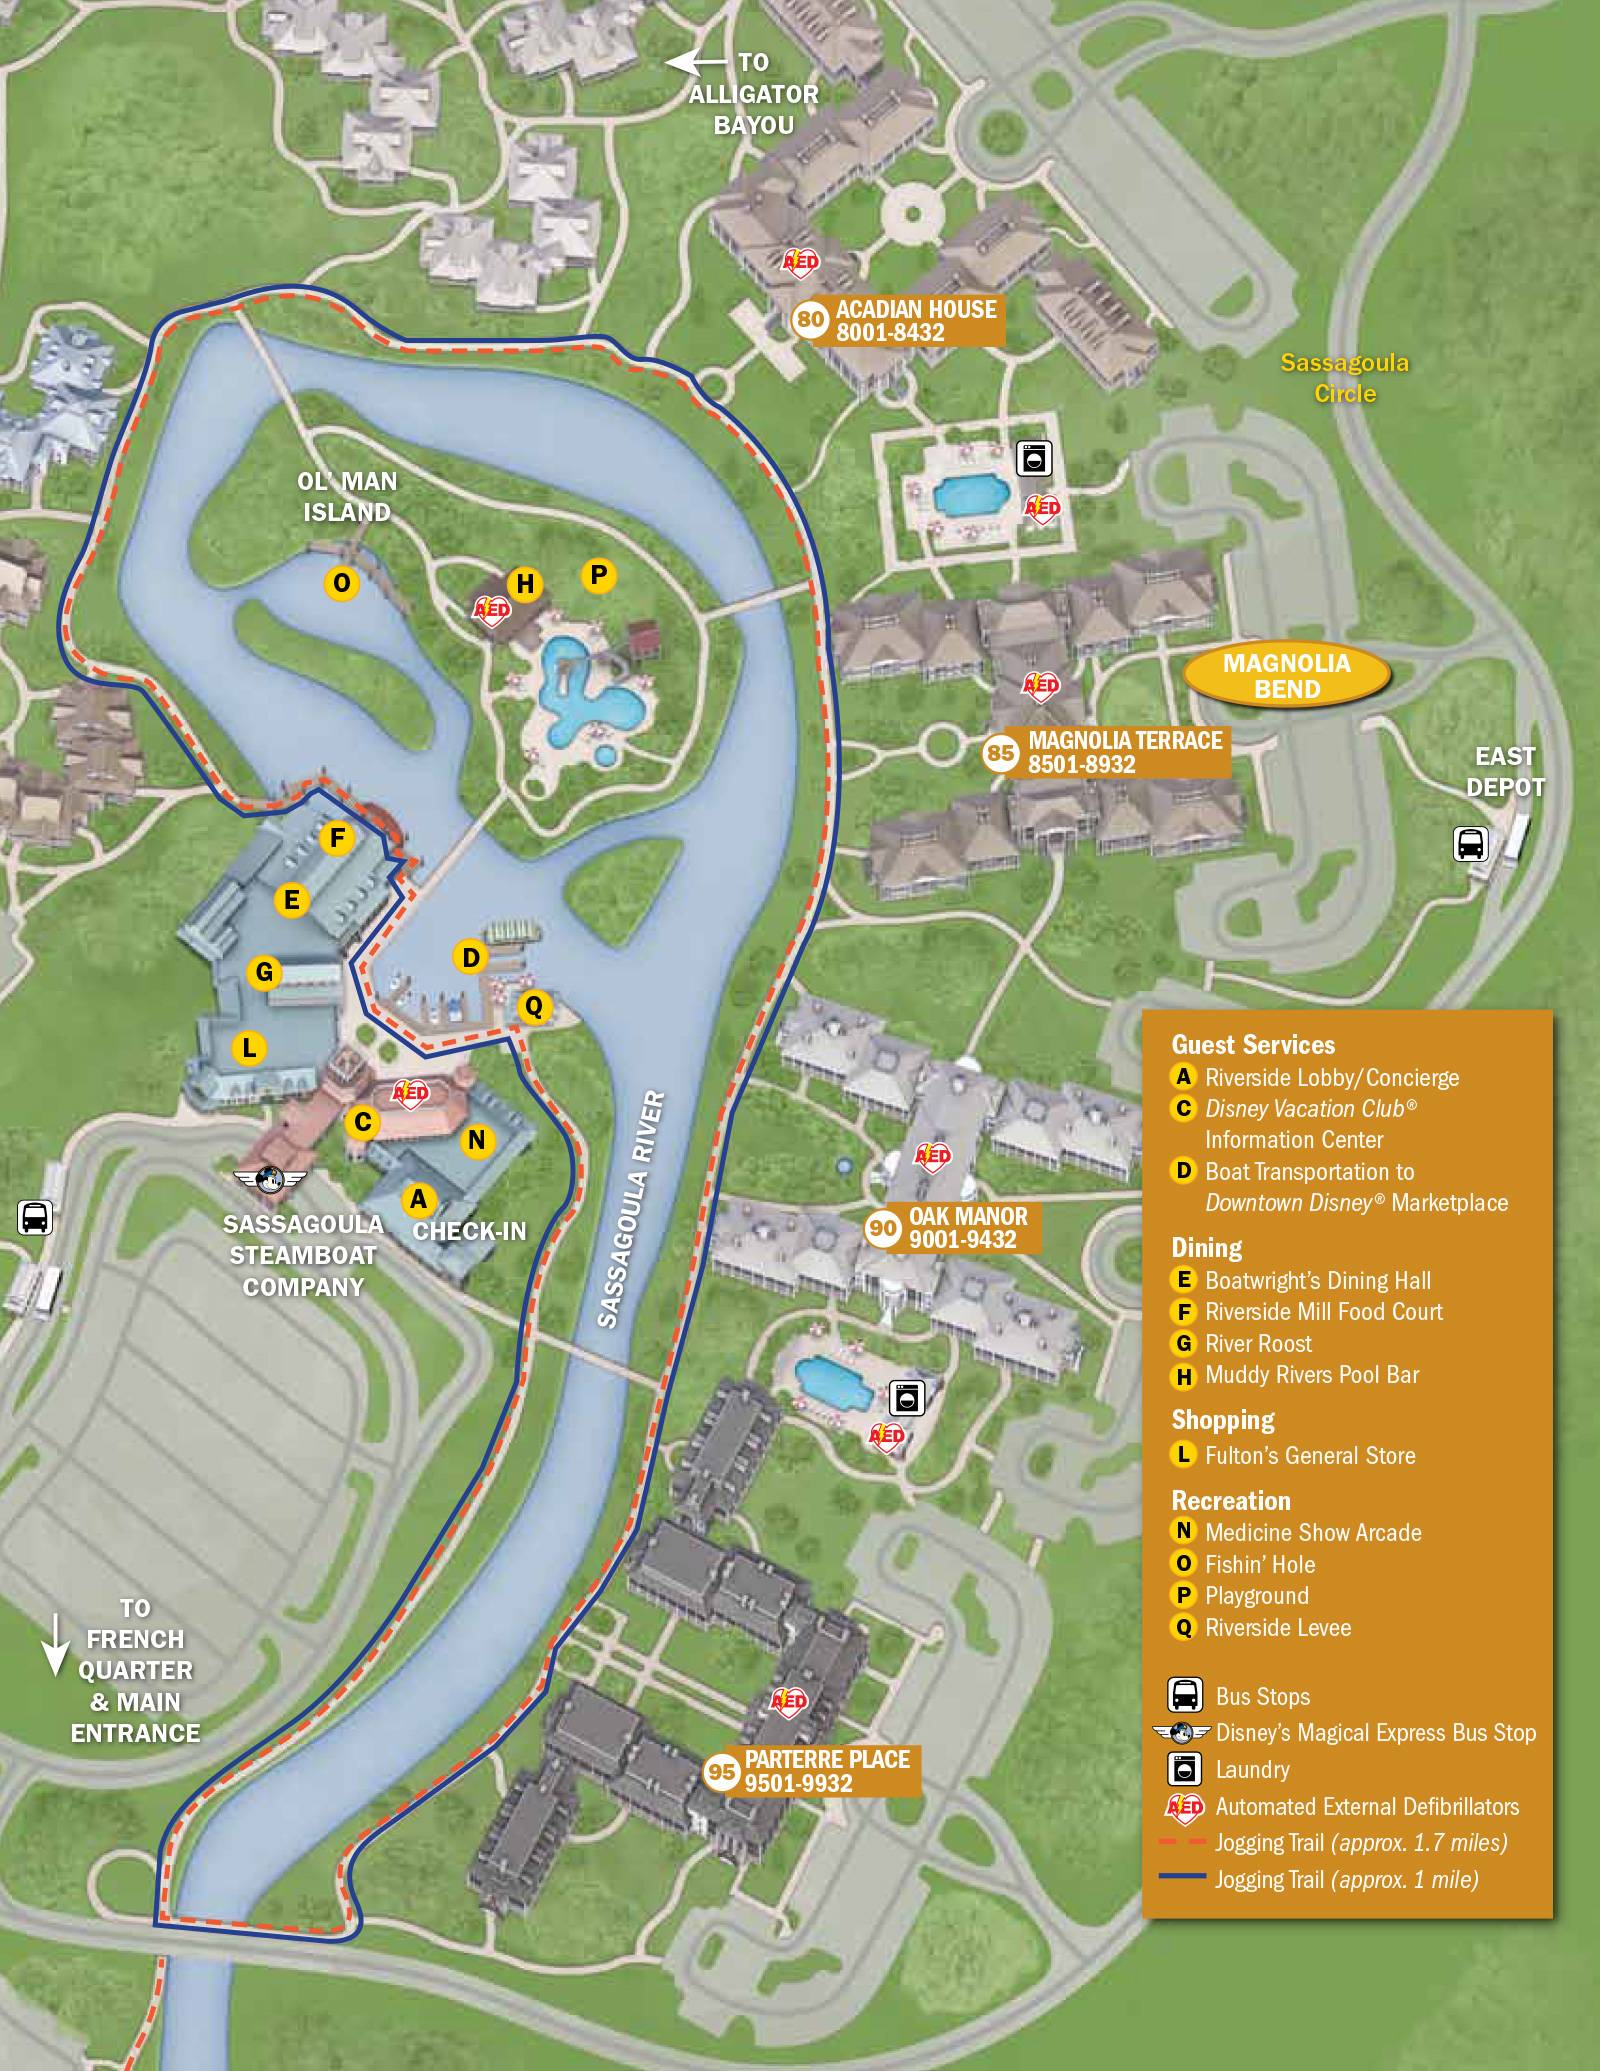 New 2013 Port Orleans Resort map - Magnolia Bend